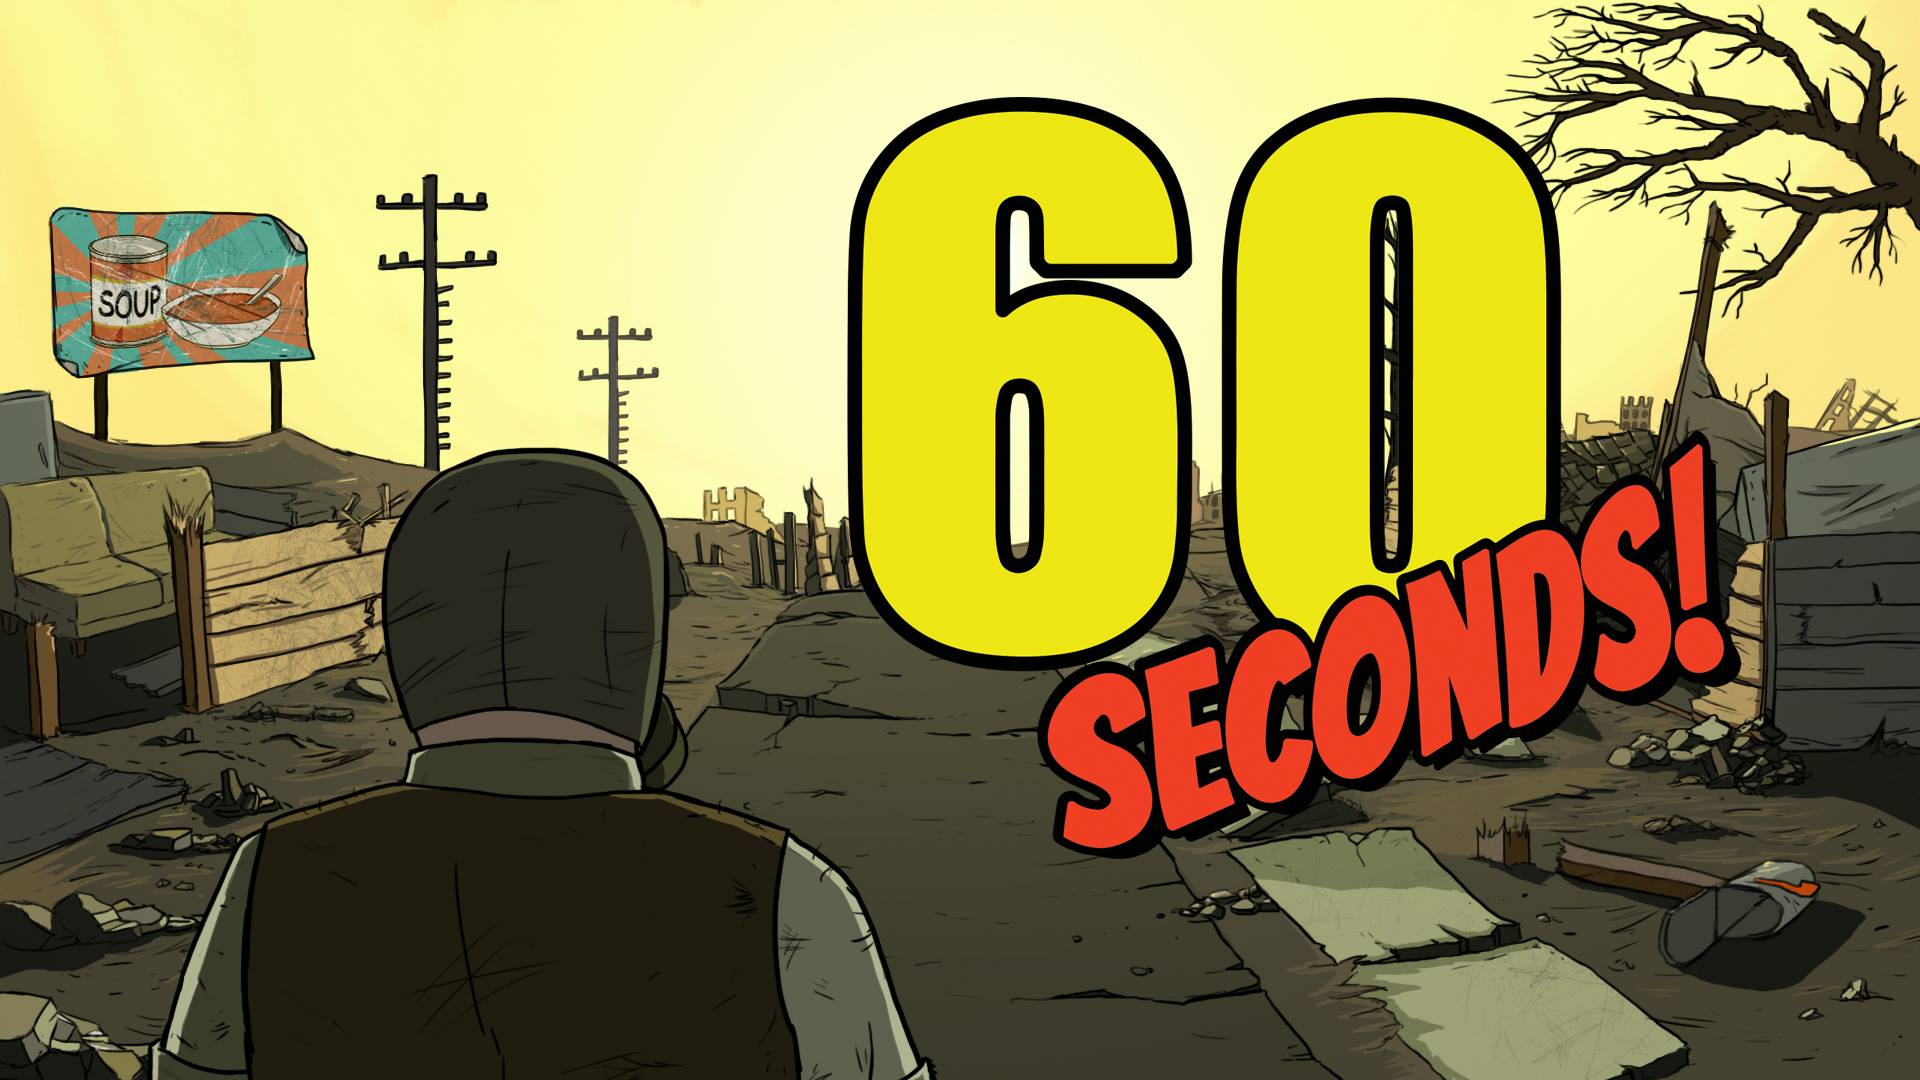 60 Parsecs! - Metacritic